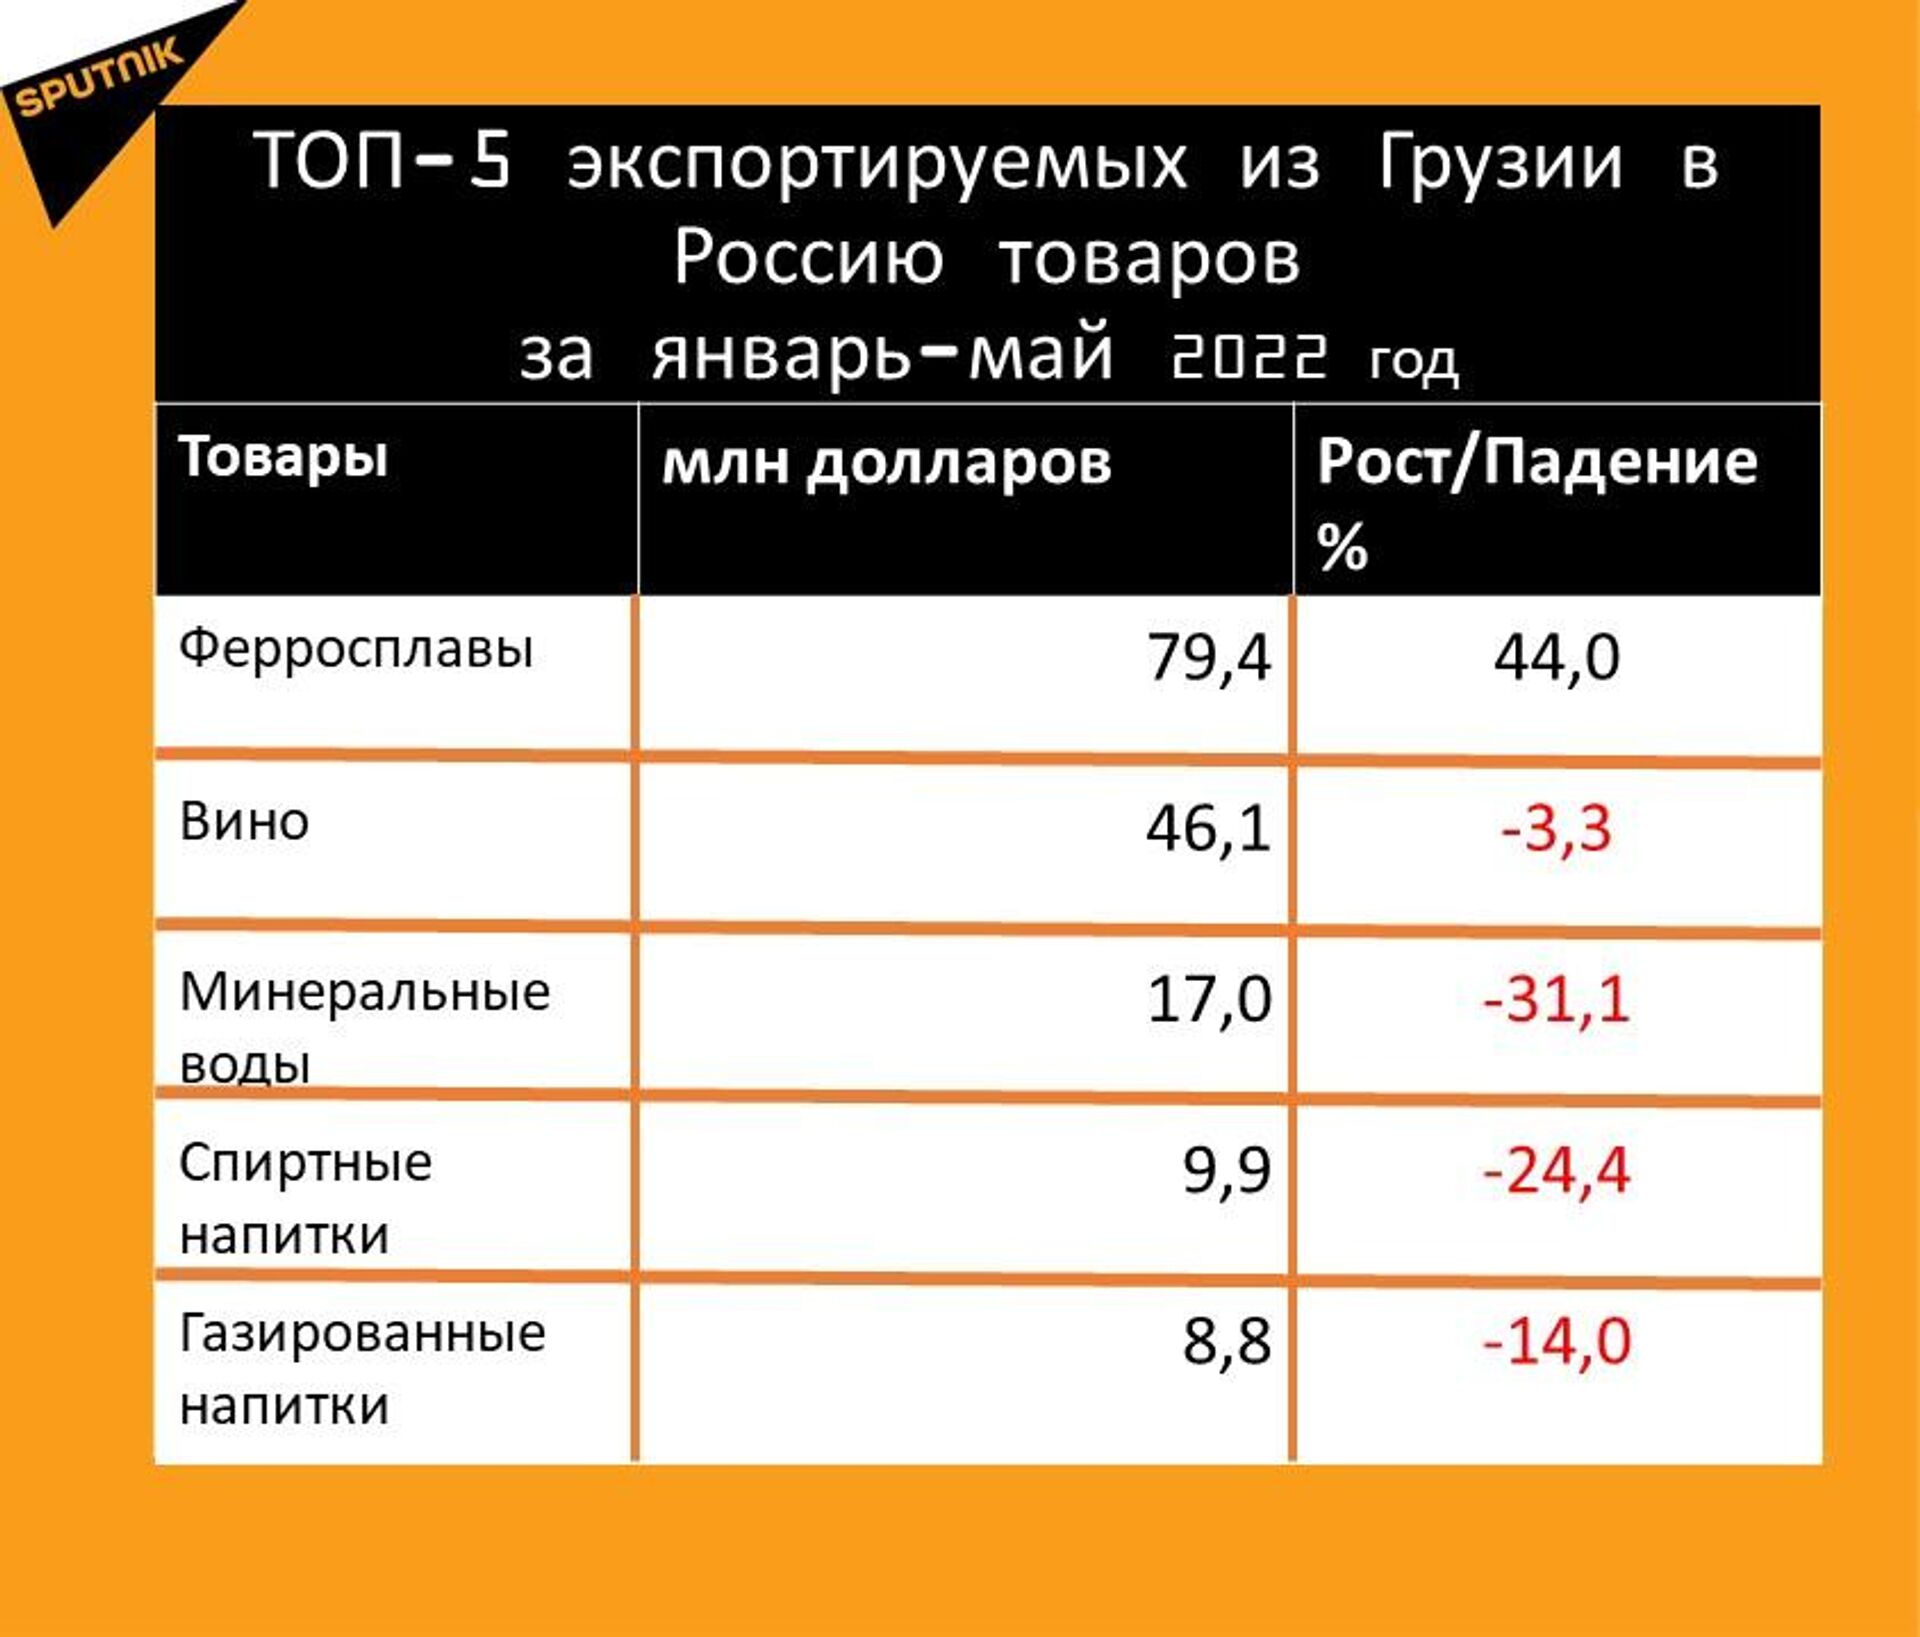 Статистика внешнеторгового оборота Грузии и России за январь-май 2022 год, экспорт - Sputnik Грузия, 1920, 25.06.2022